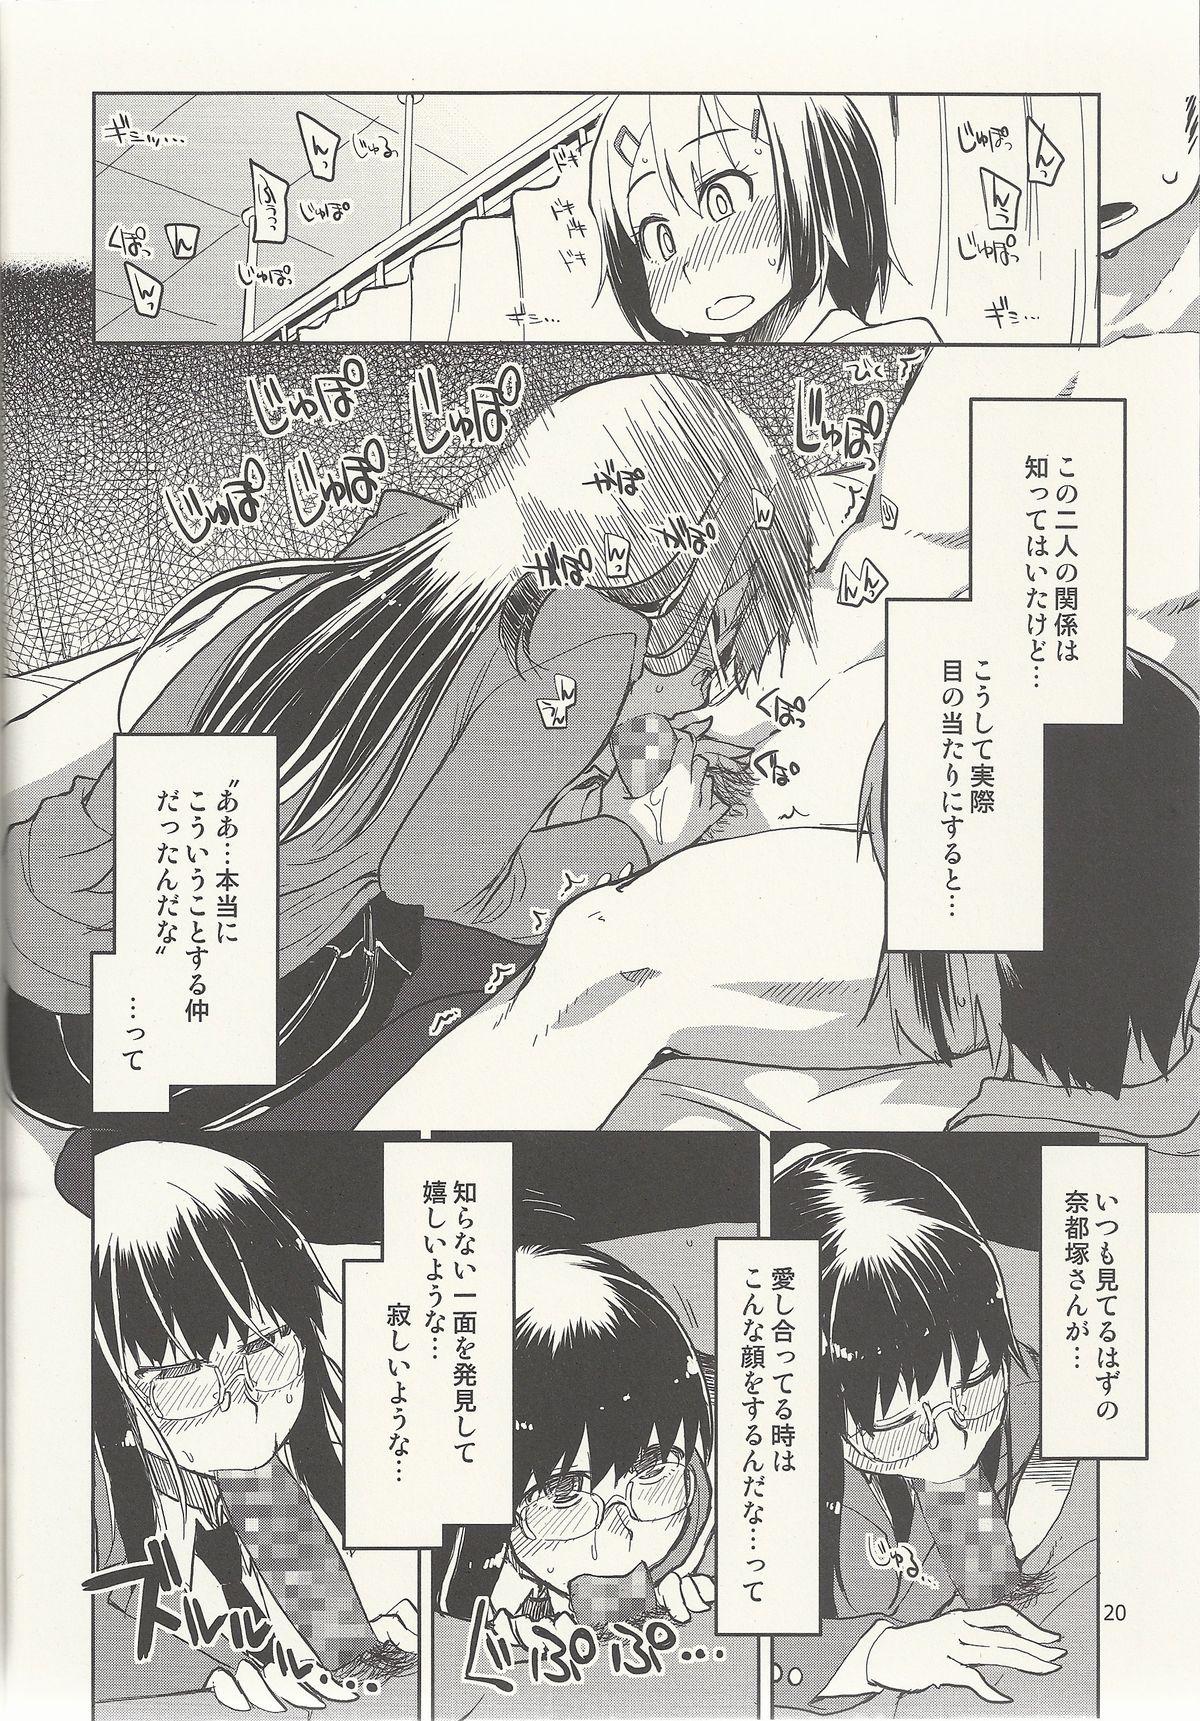 Natsuzuka-san no Himitsu. Vol. 6 Kanketsu Hen 20